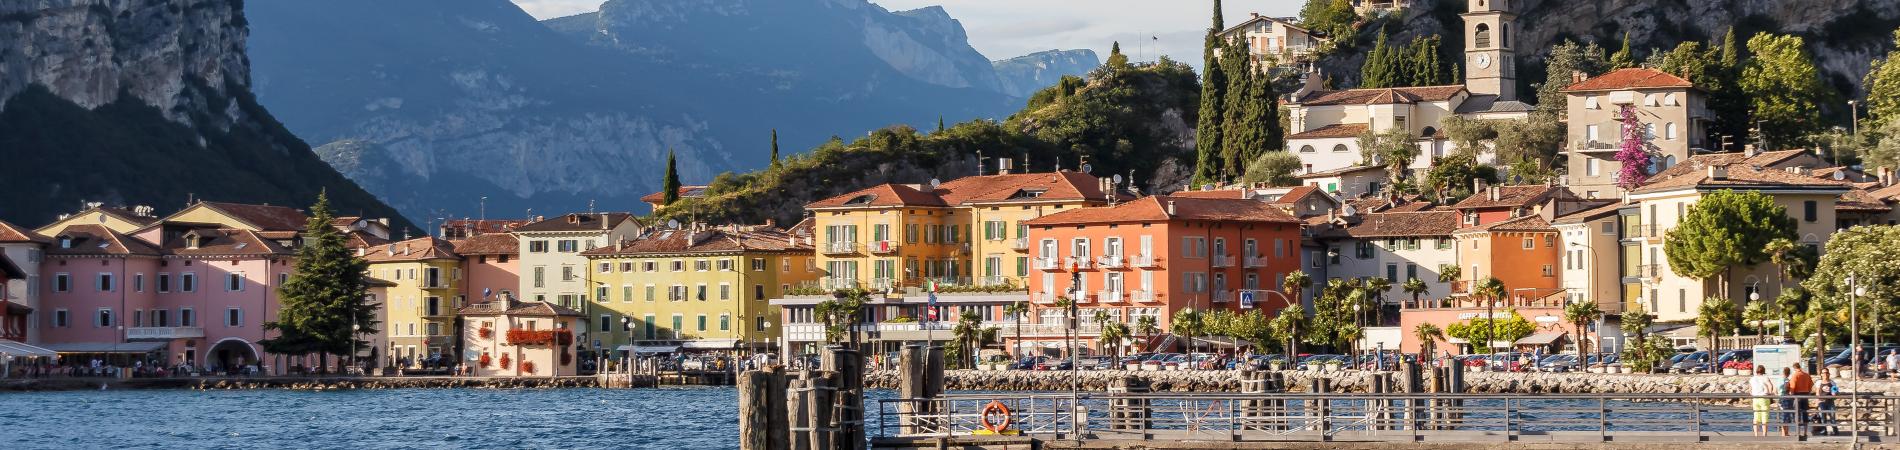 Image for Three Reasons to Visit Lake Garda